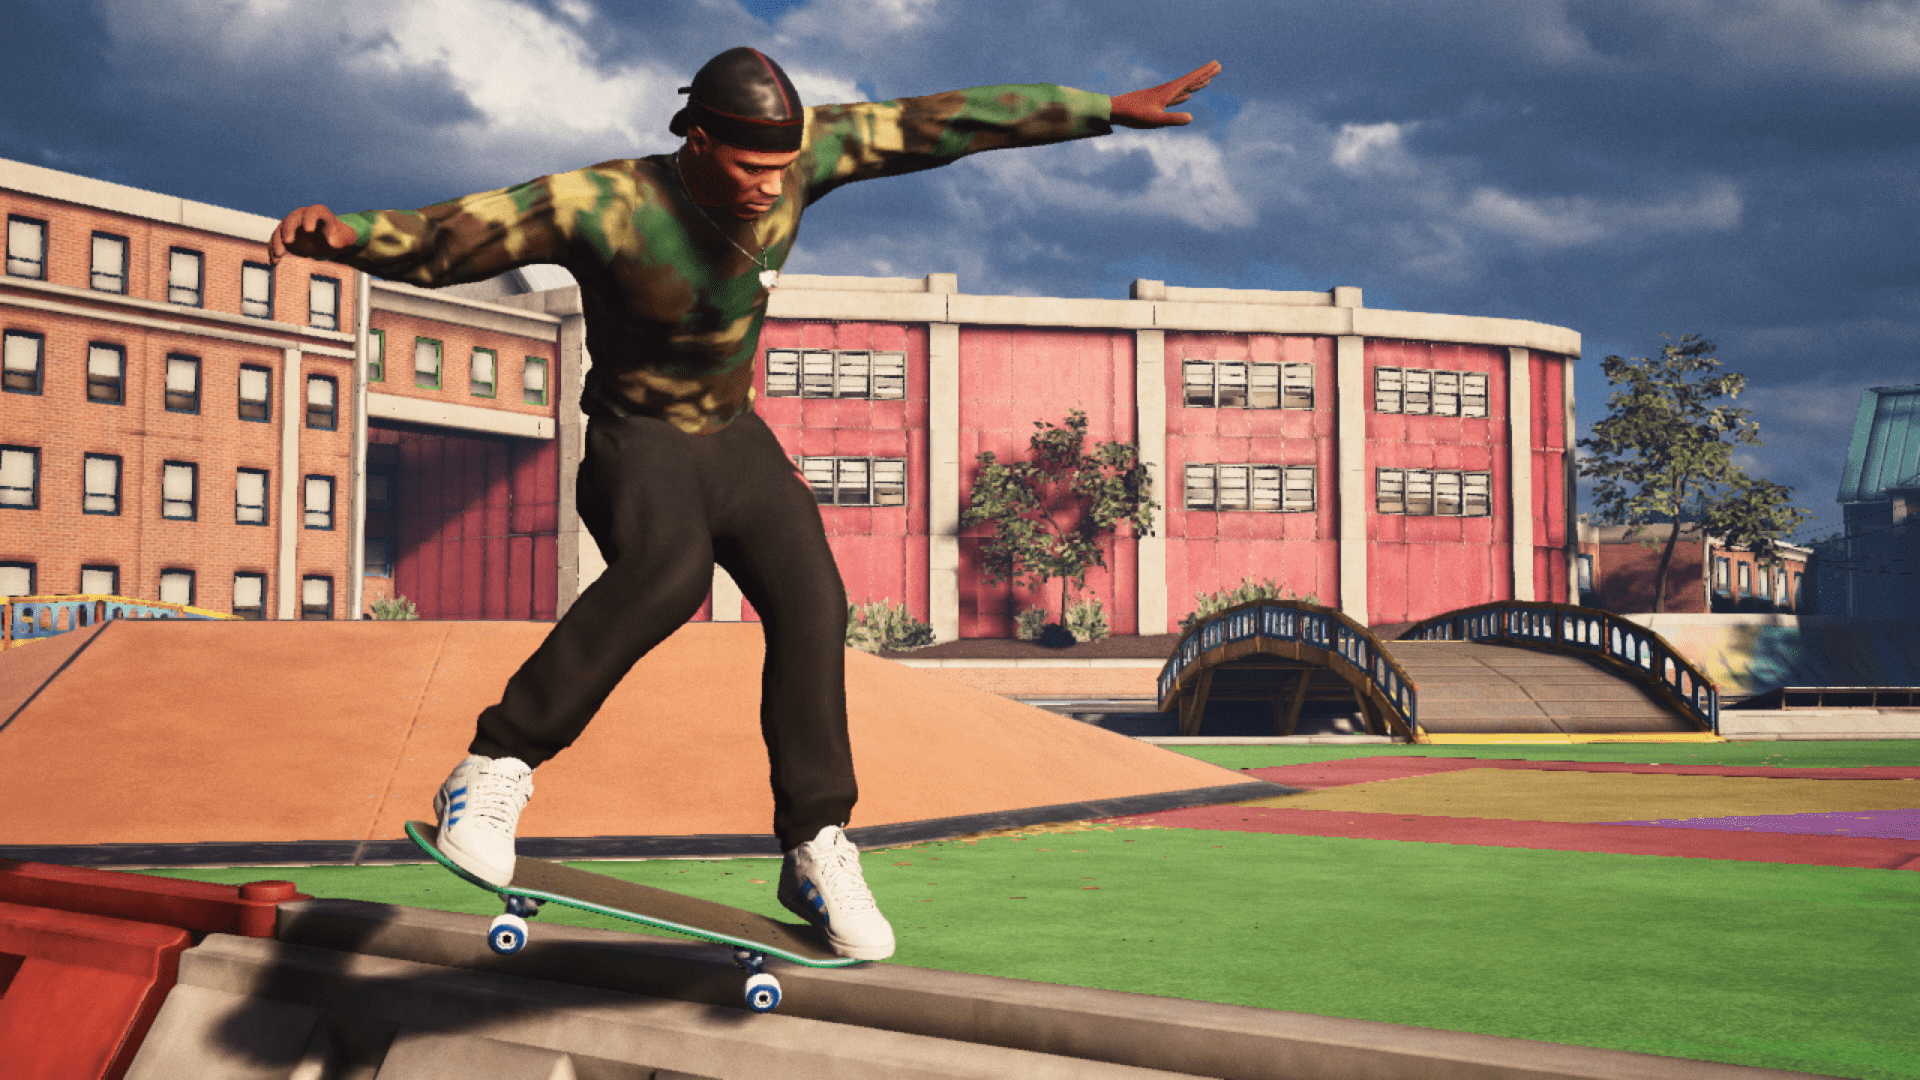 O que tornou Tony Hawk's Pro Skater um sucesso em sua época? - Nintendo  Blast